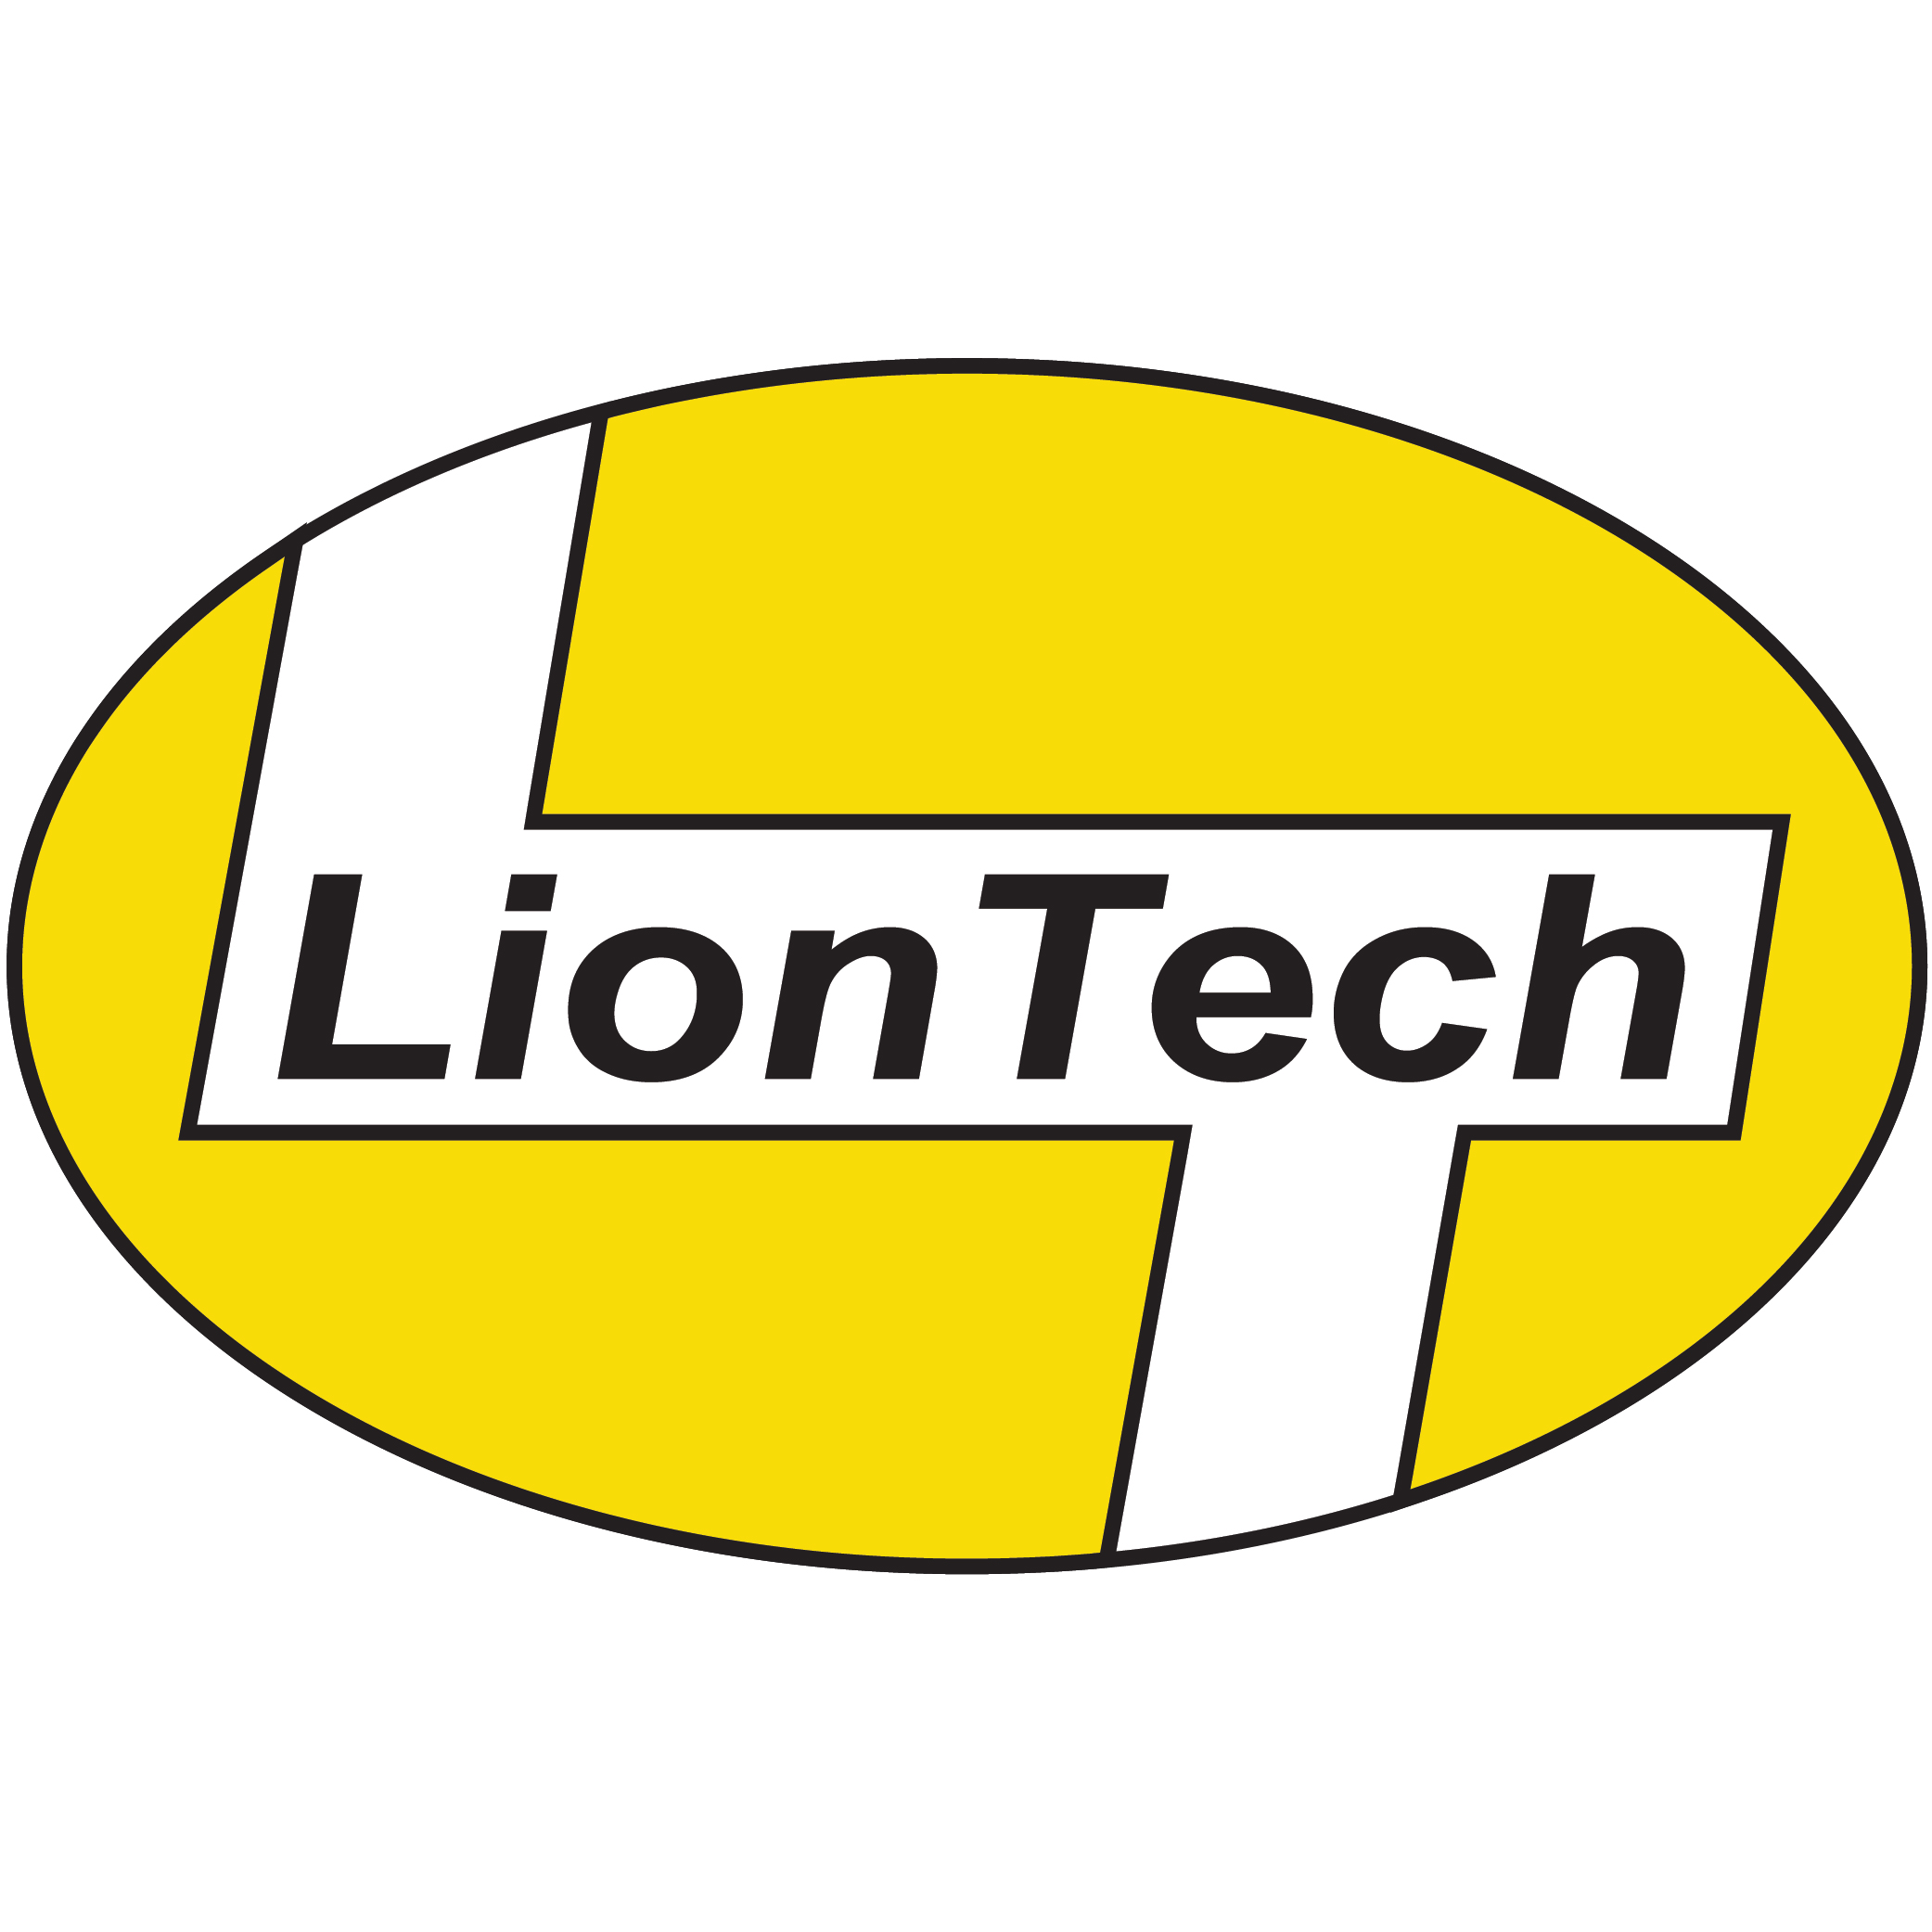 liontech